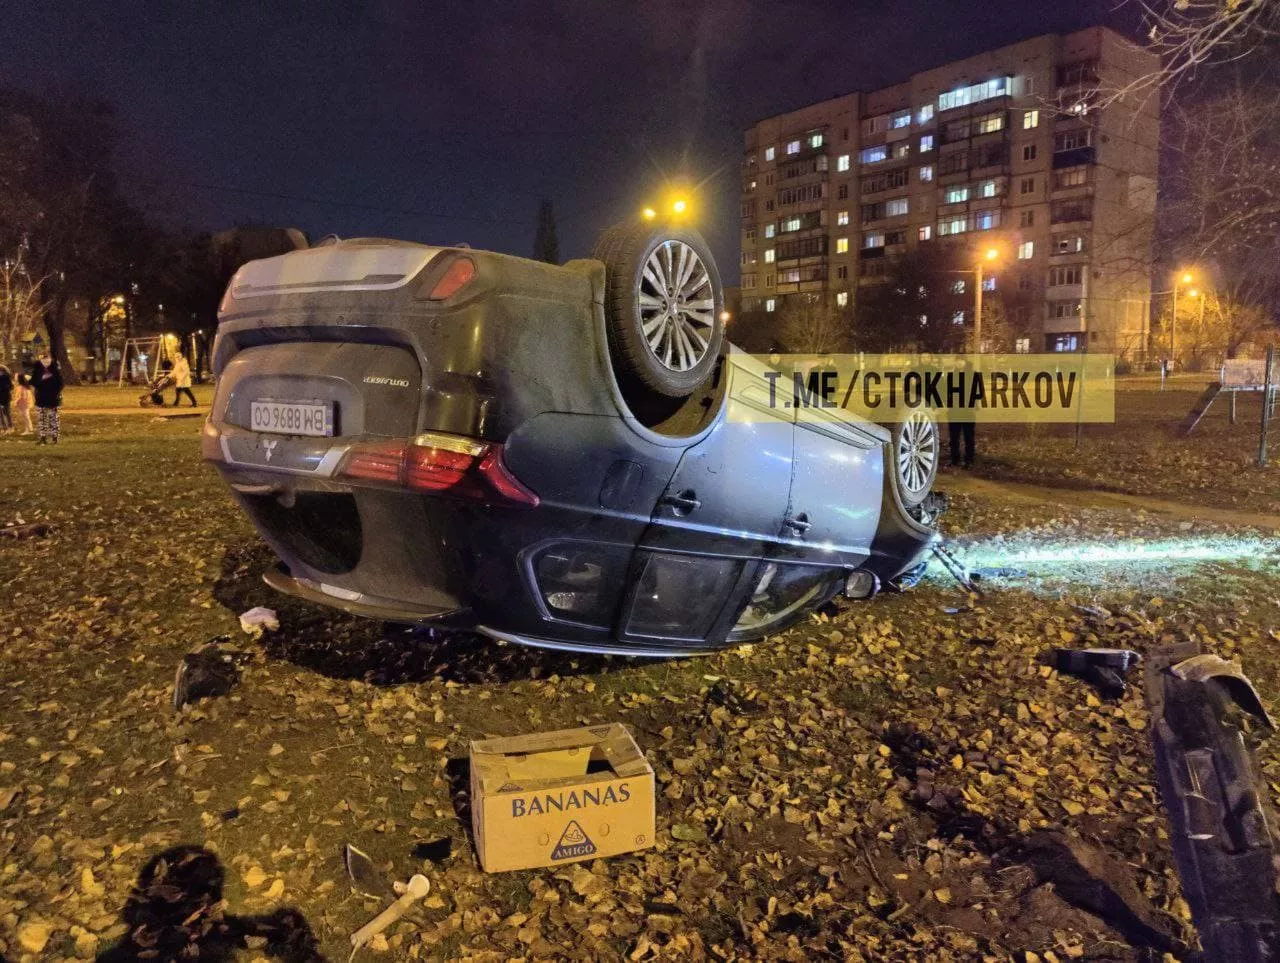 Після удару автомобіль з п'яним водієм перекинувся/Фото: Telegram/Автомобільний Харків